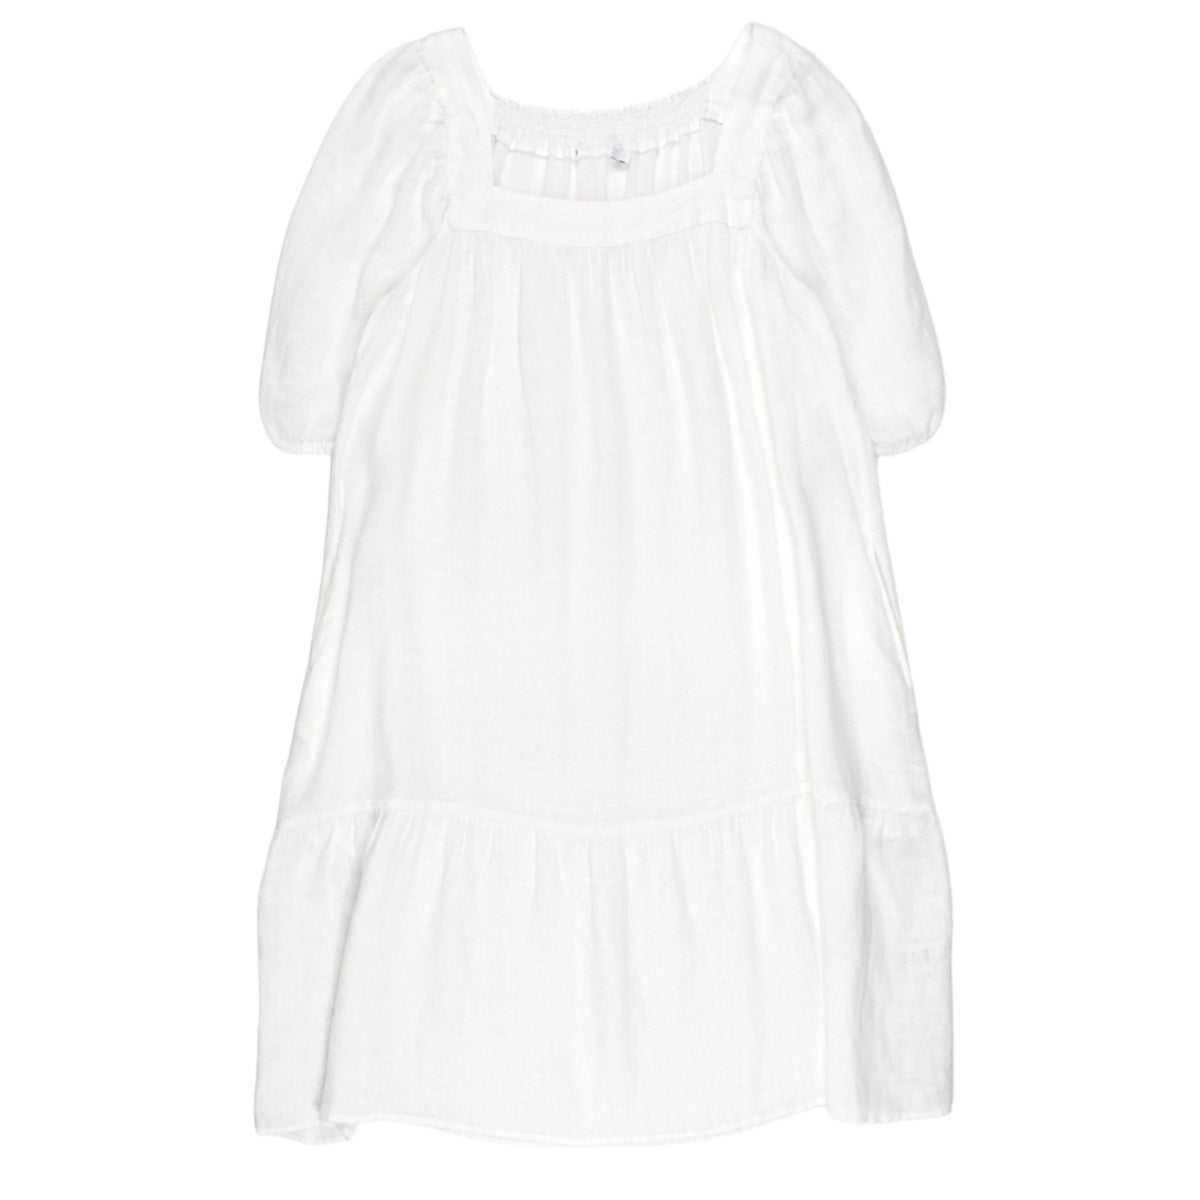 NRBY White Linen Midi Dress - Sample